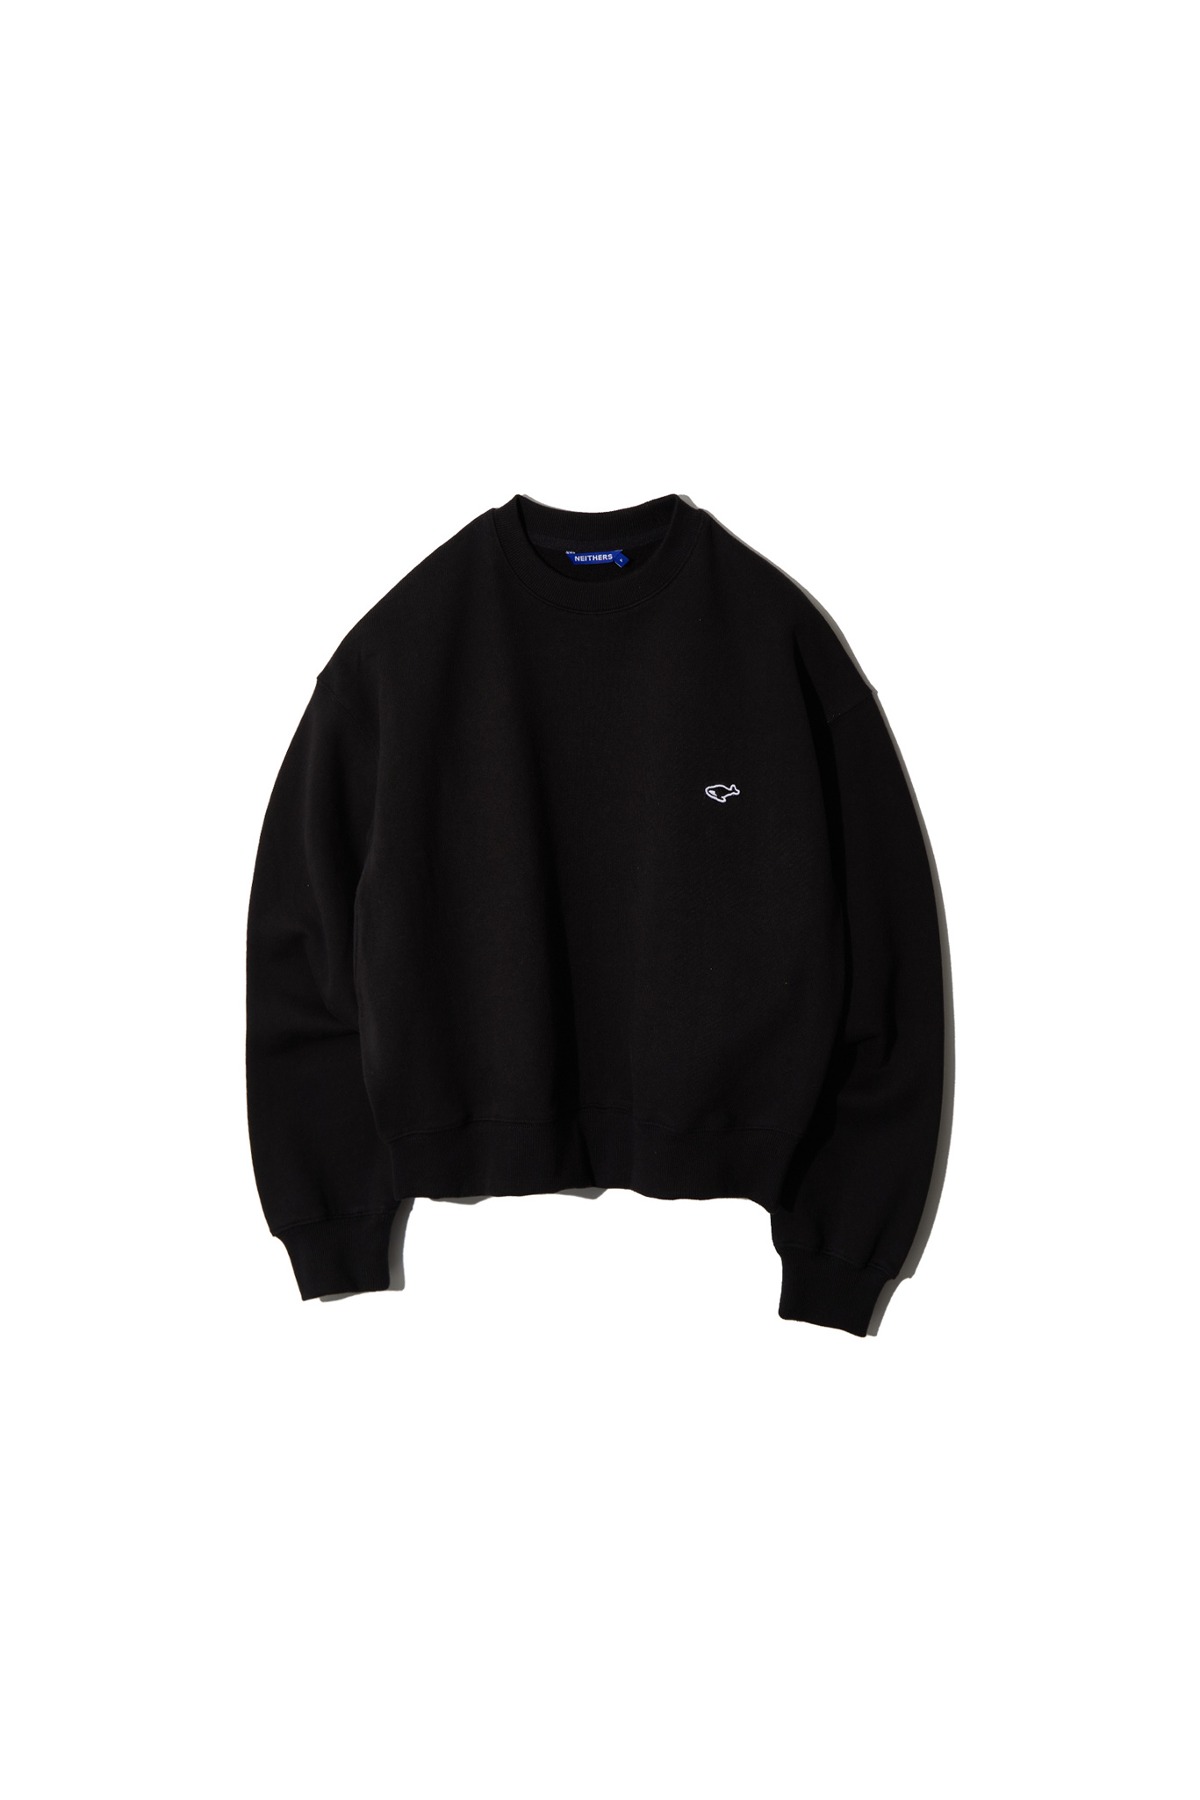 Cropped Sweatshirt For Women (Black)